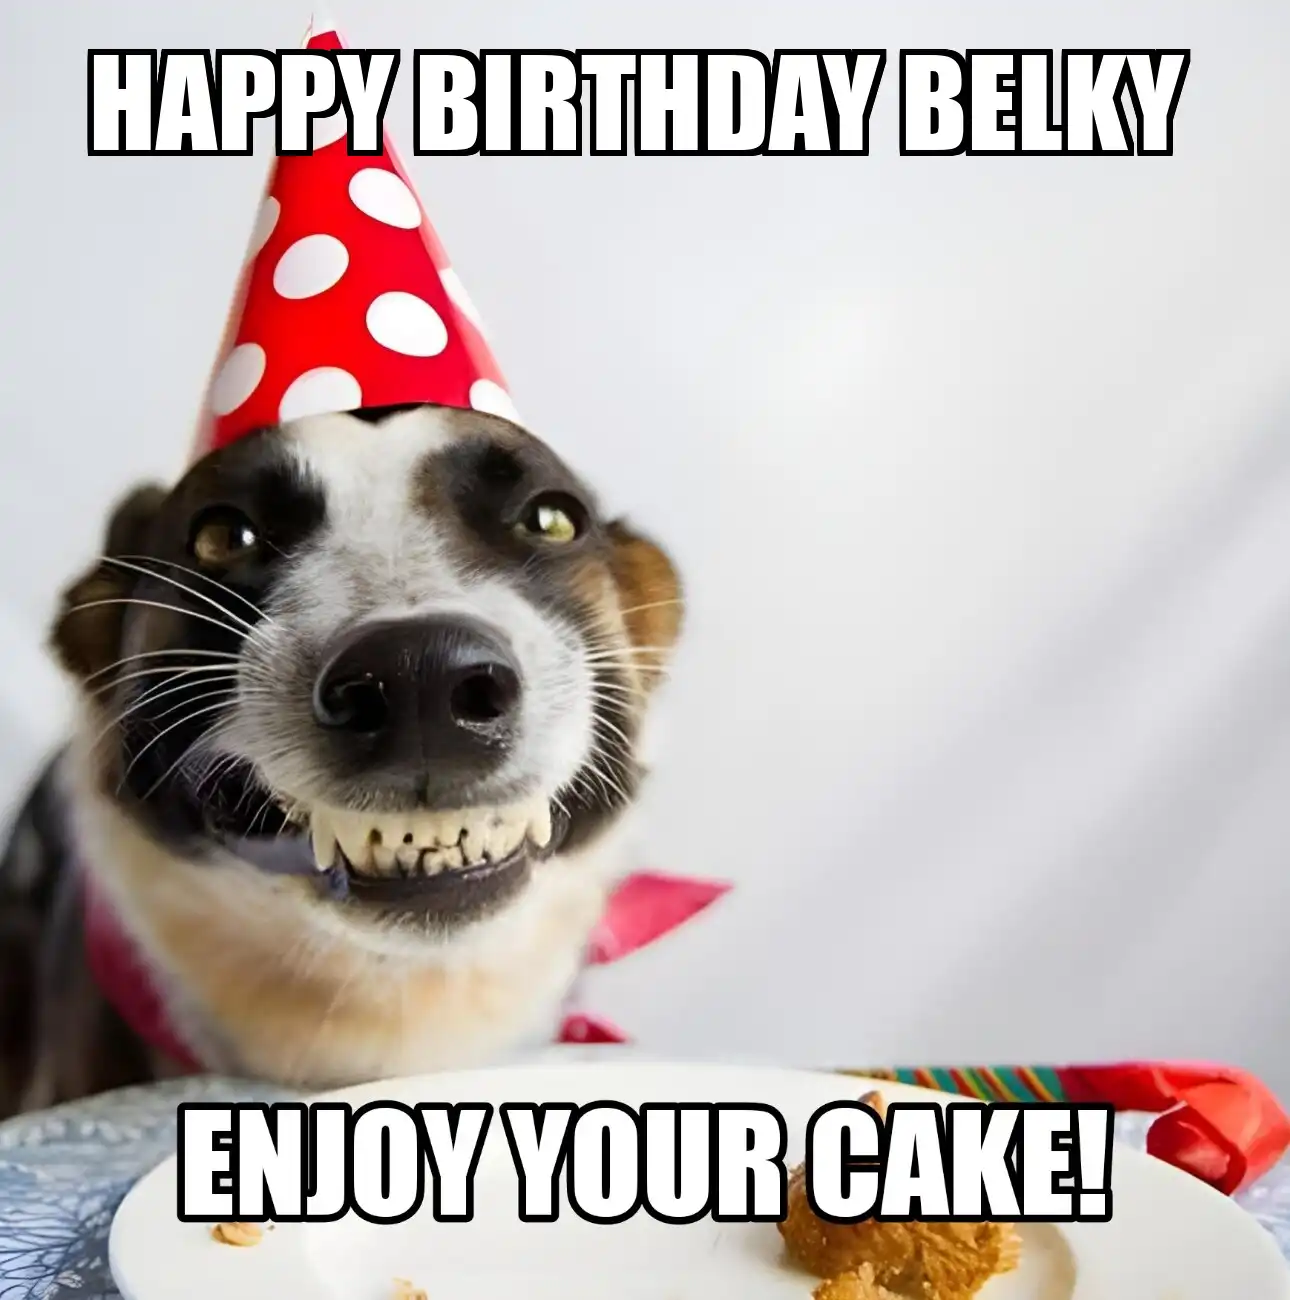 Happy Birthday Belky Enjoy Your Cake Dog Meme